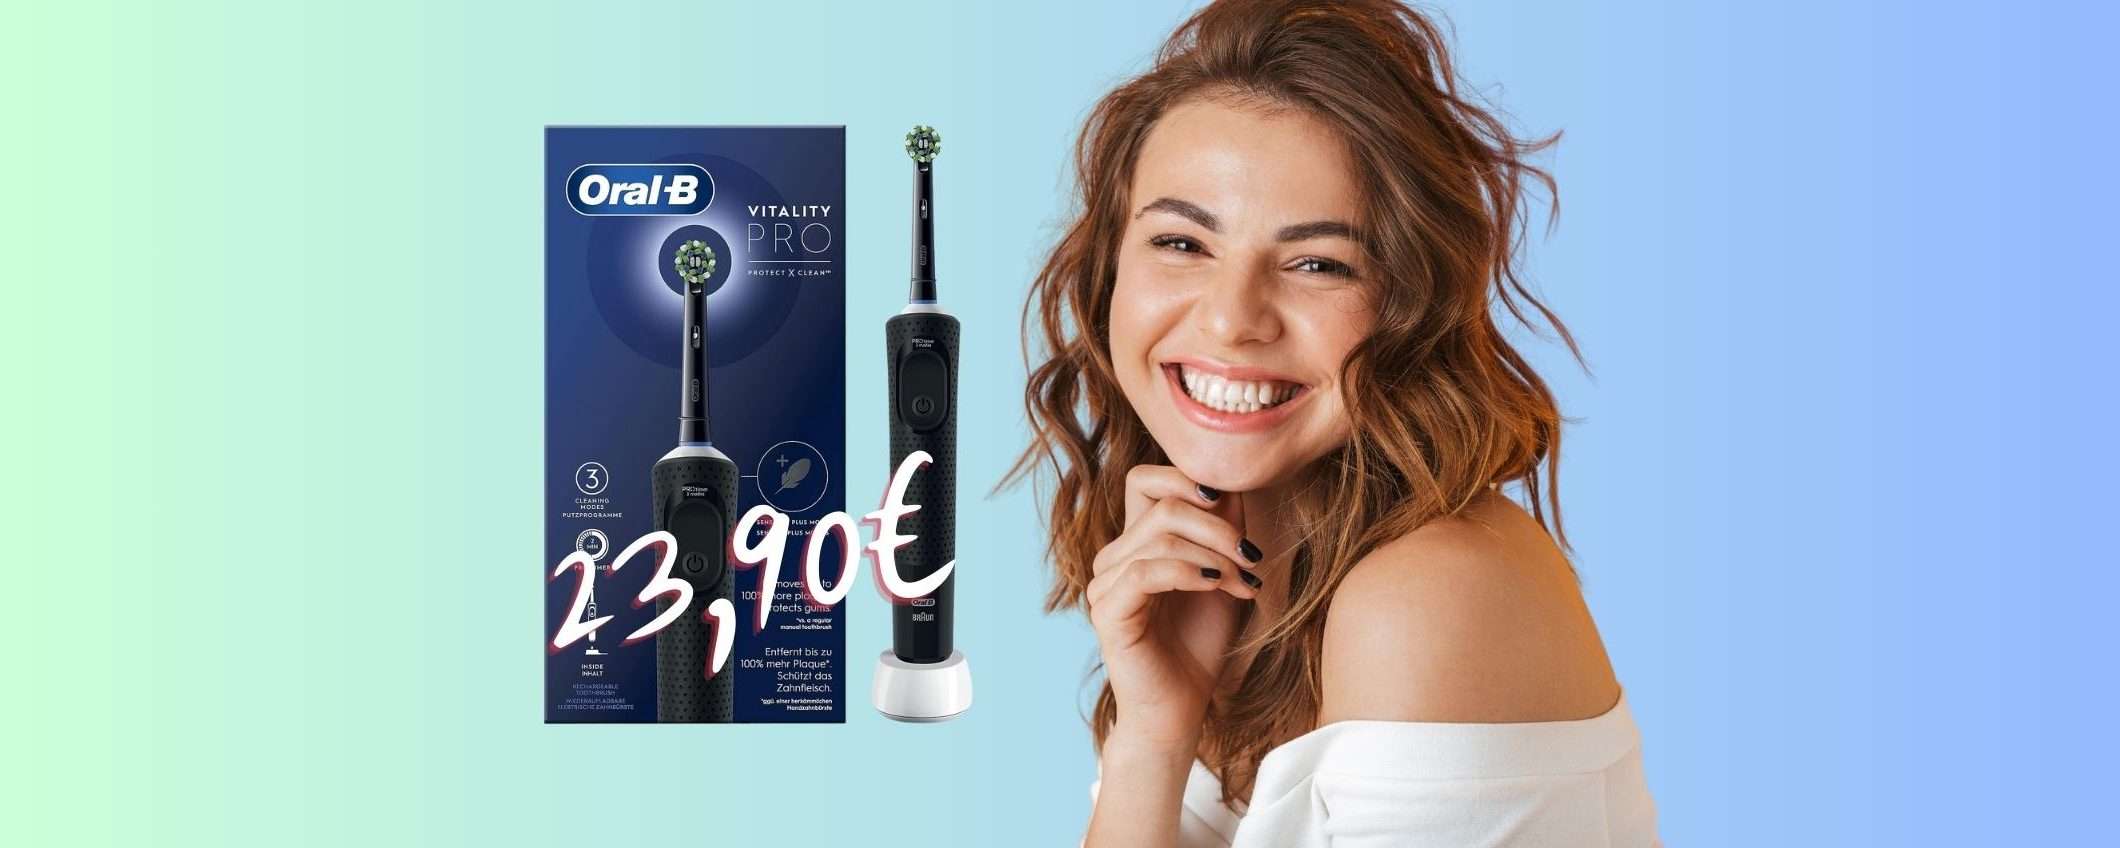 Oral-B Vitality Pro: qualità prezzo IMPAREGGIABILE, solo 23,90€